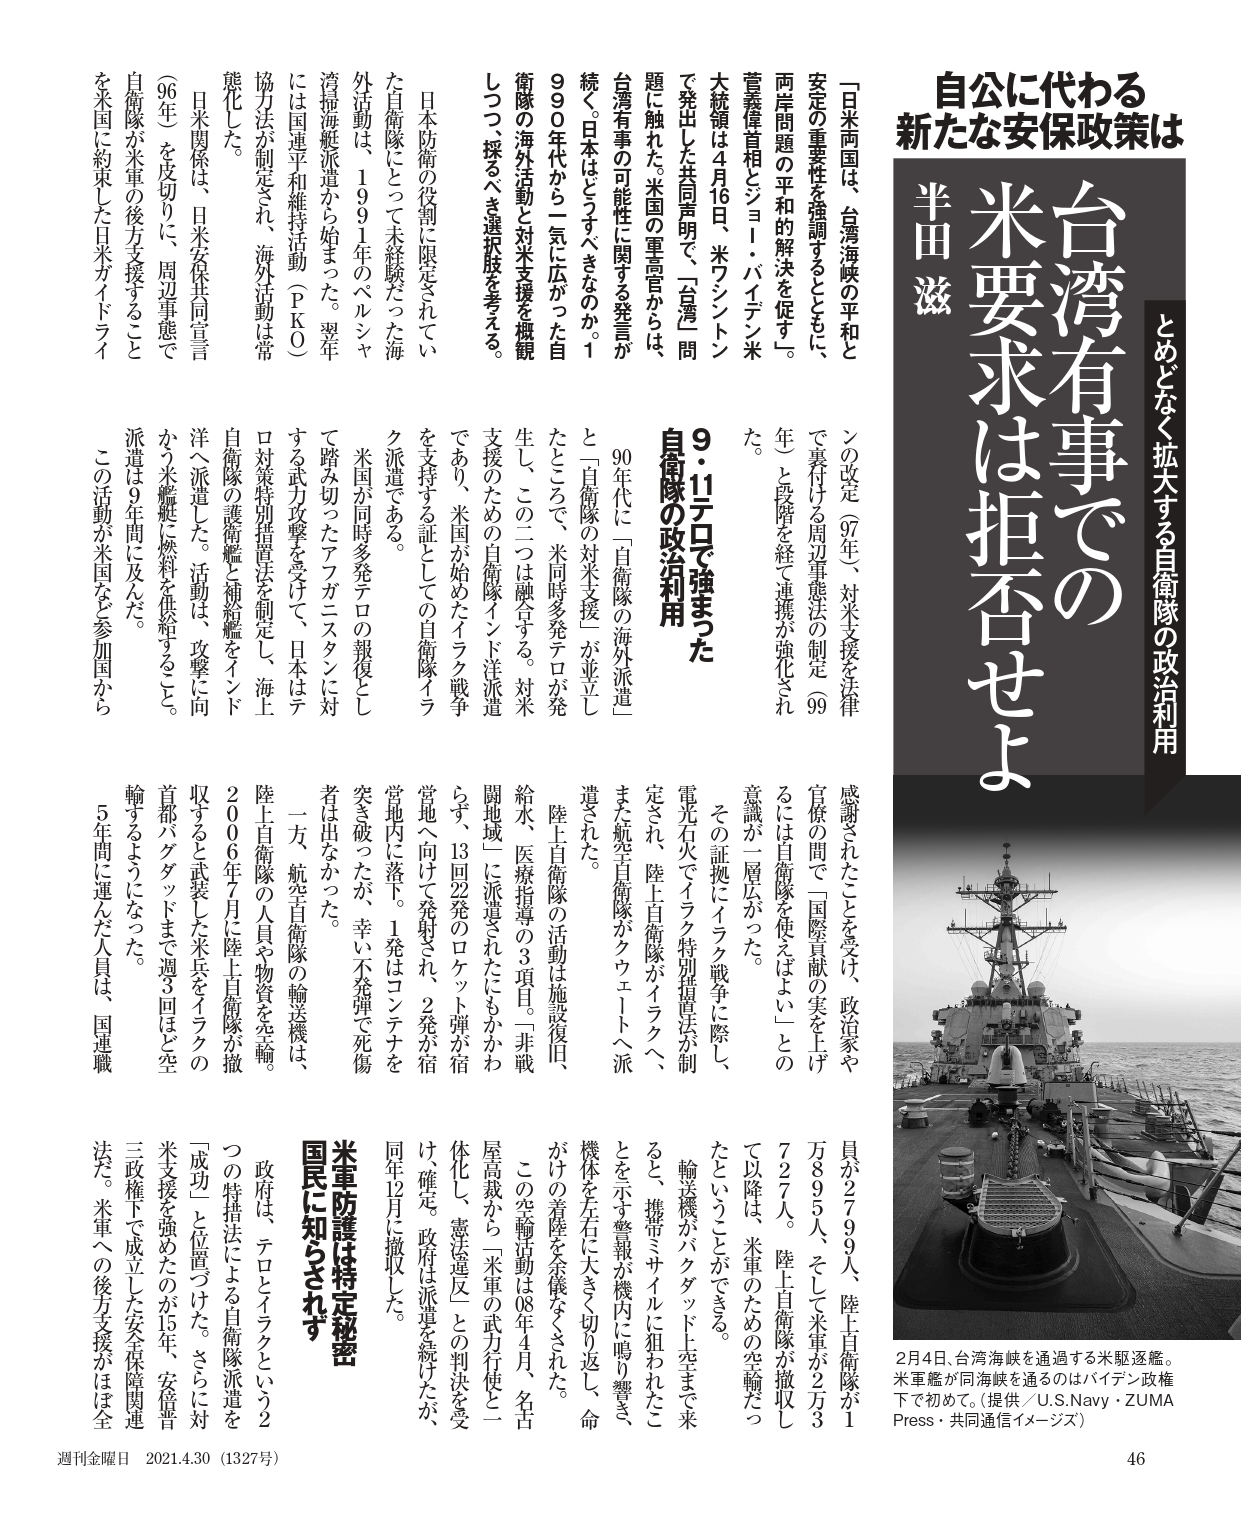 は 台湾 有事 と ロシアの侵攻で増す懸念｢台湾有事｣日本への影響